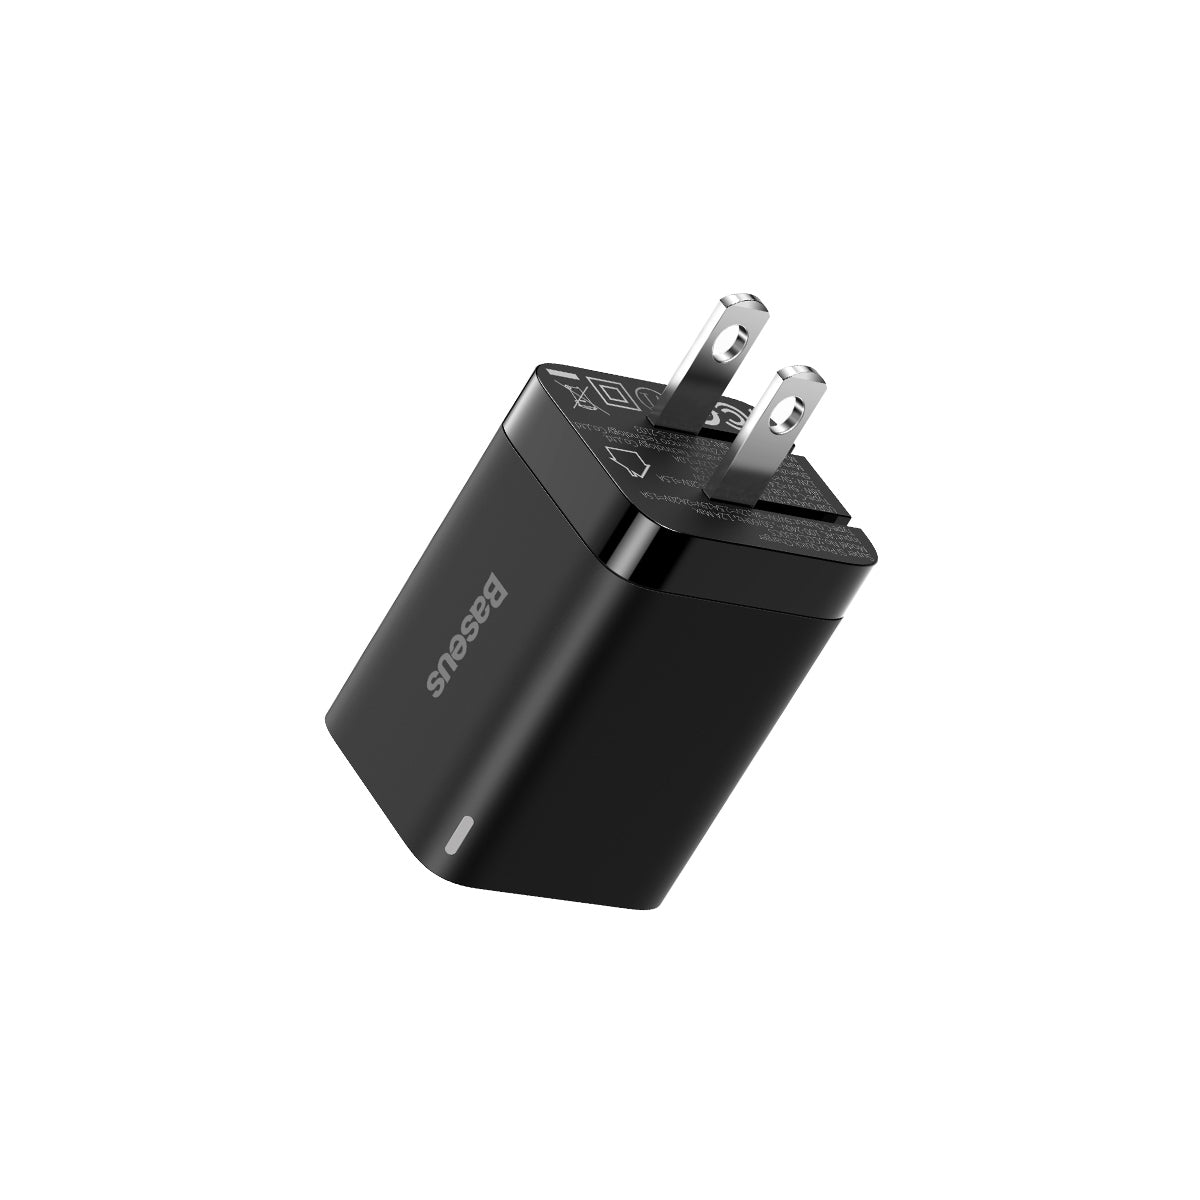 Drugstore :: Univers mobile :: Chargeur Baseus GaN2 Pro 120W 2x USB-C + USB  + Câble USB-C (CCGAN-J01) (Noir) - Quick charger PD